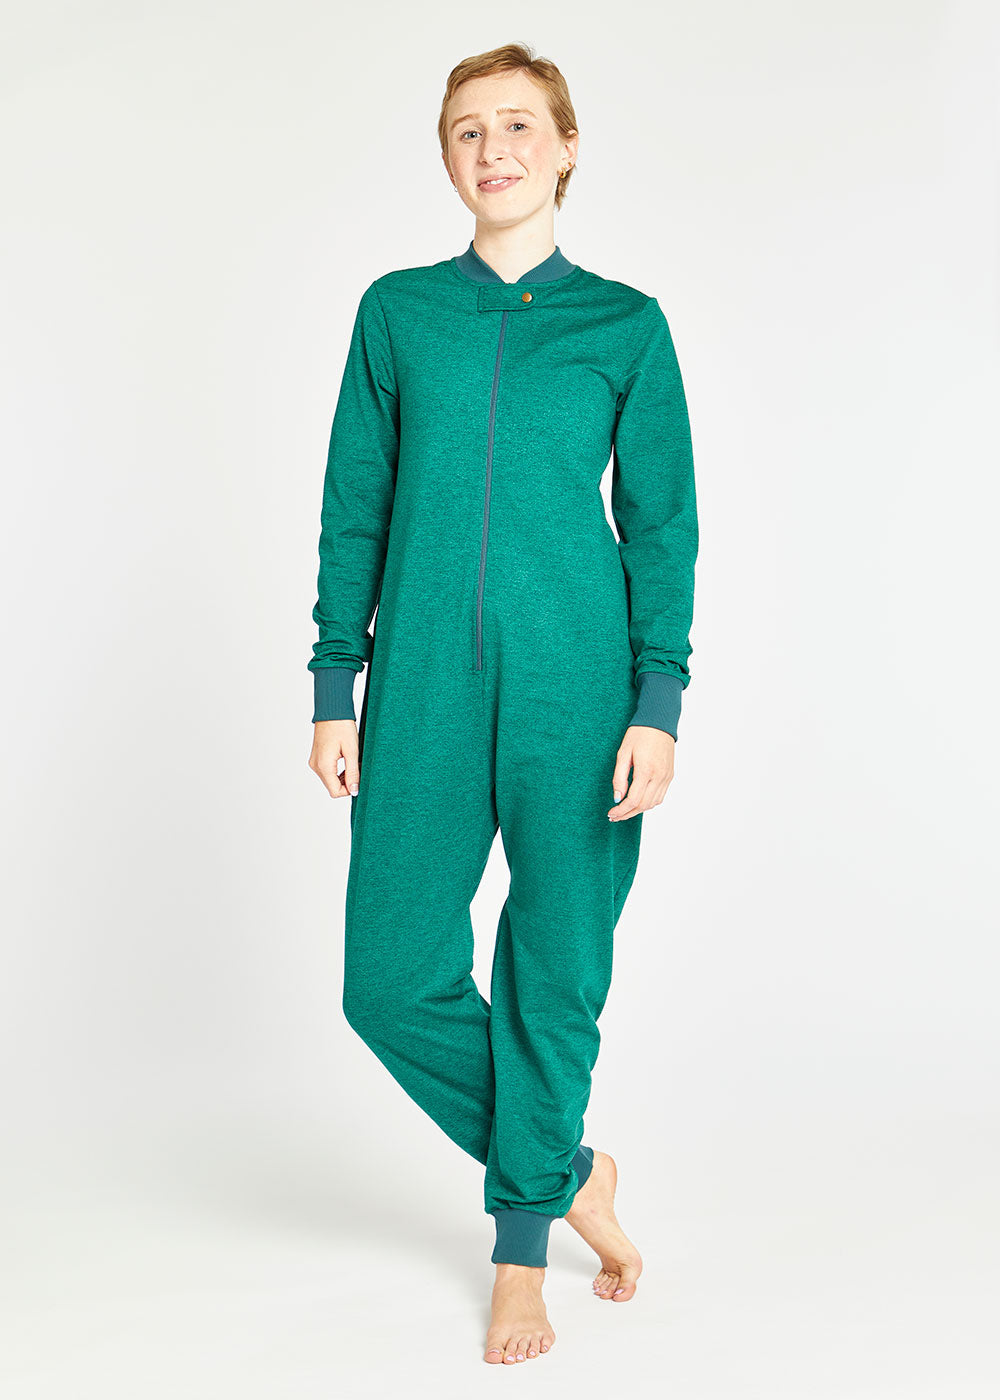 Lux Yeti Snuggle Suit, Douglas Fir/spruce / Xs